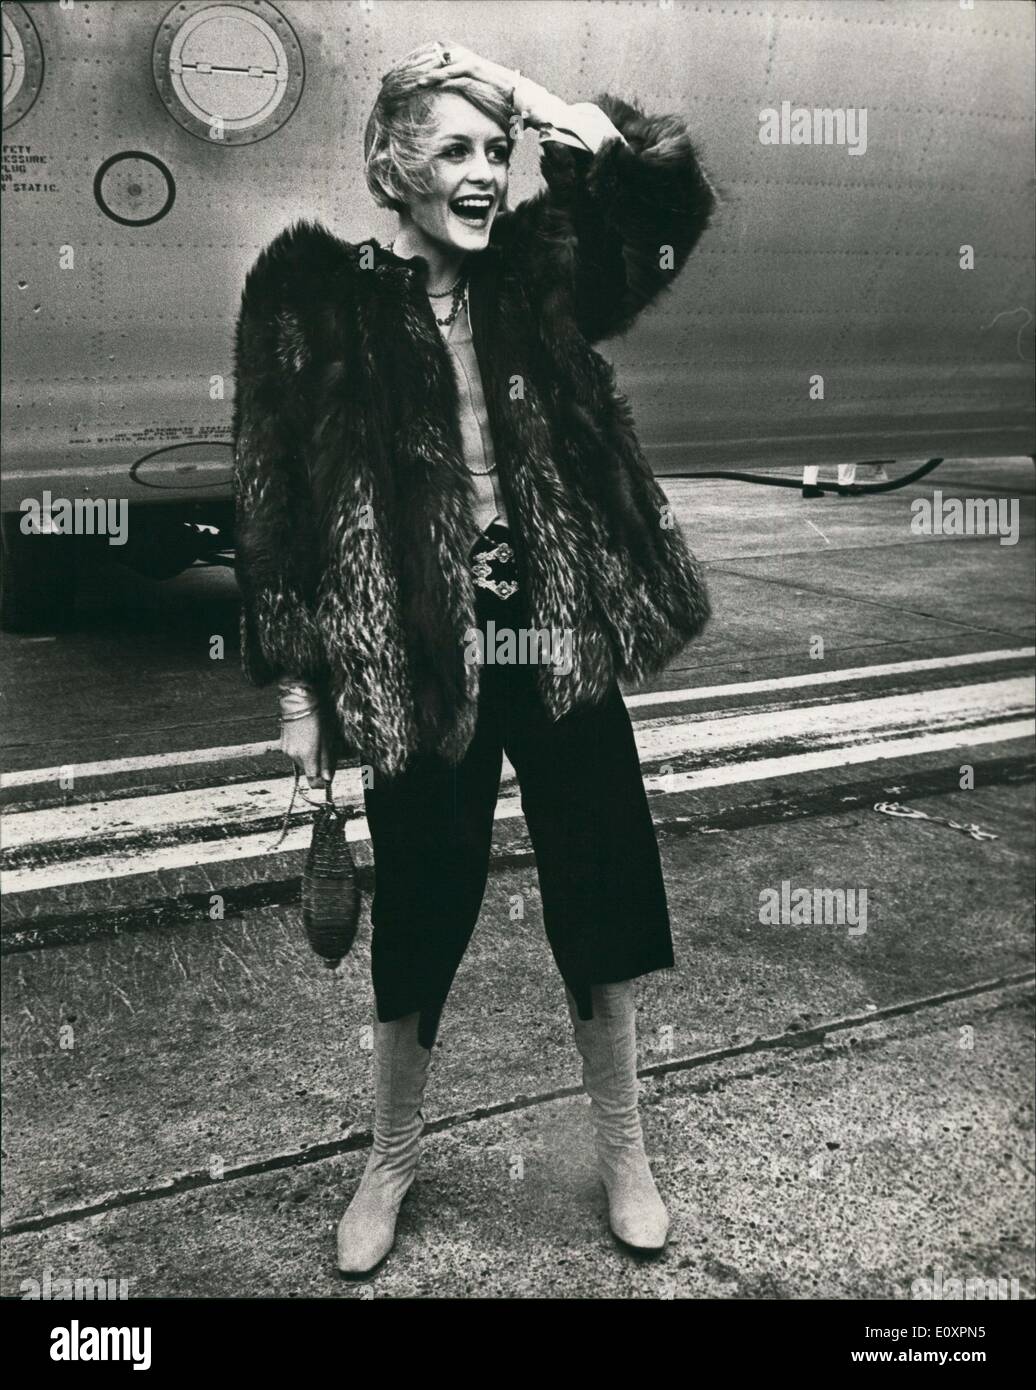 Octubre 10, 1967 - Twiggy a Japón por aire para mostrar su moda: acompañado  por su amigo hoy manager, Justin de Villeneuve, Gran Bretaña, la famosa modelo  Twiggy abandonaron Londres aeropuerto hoy